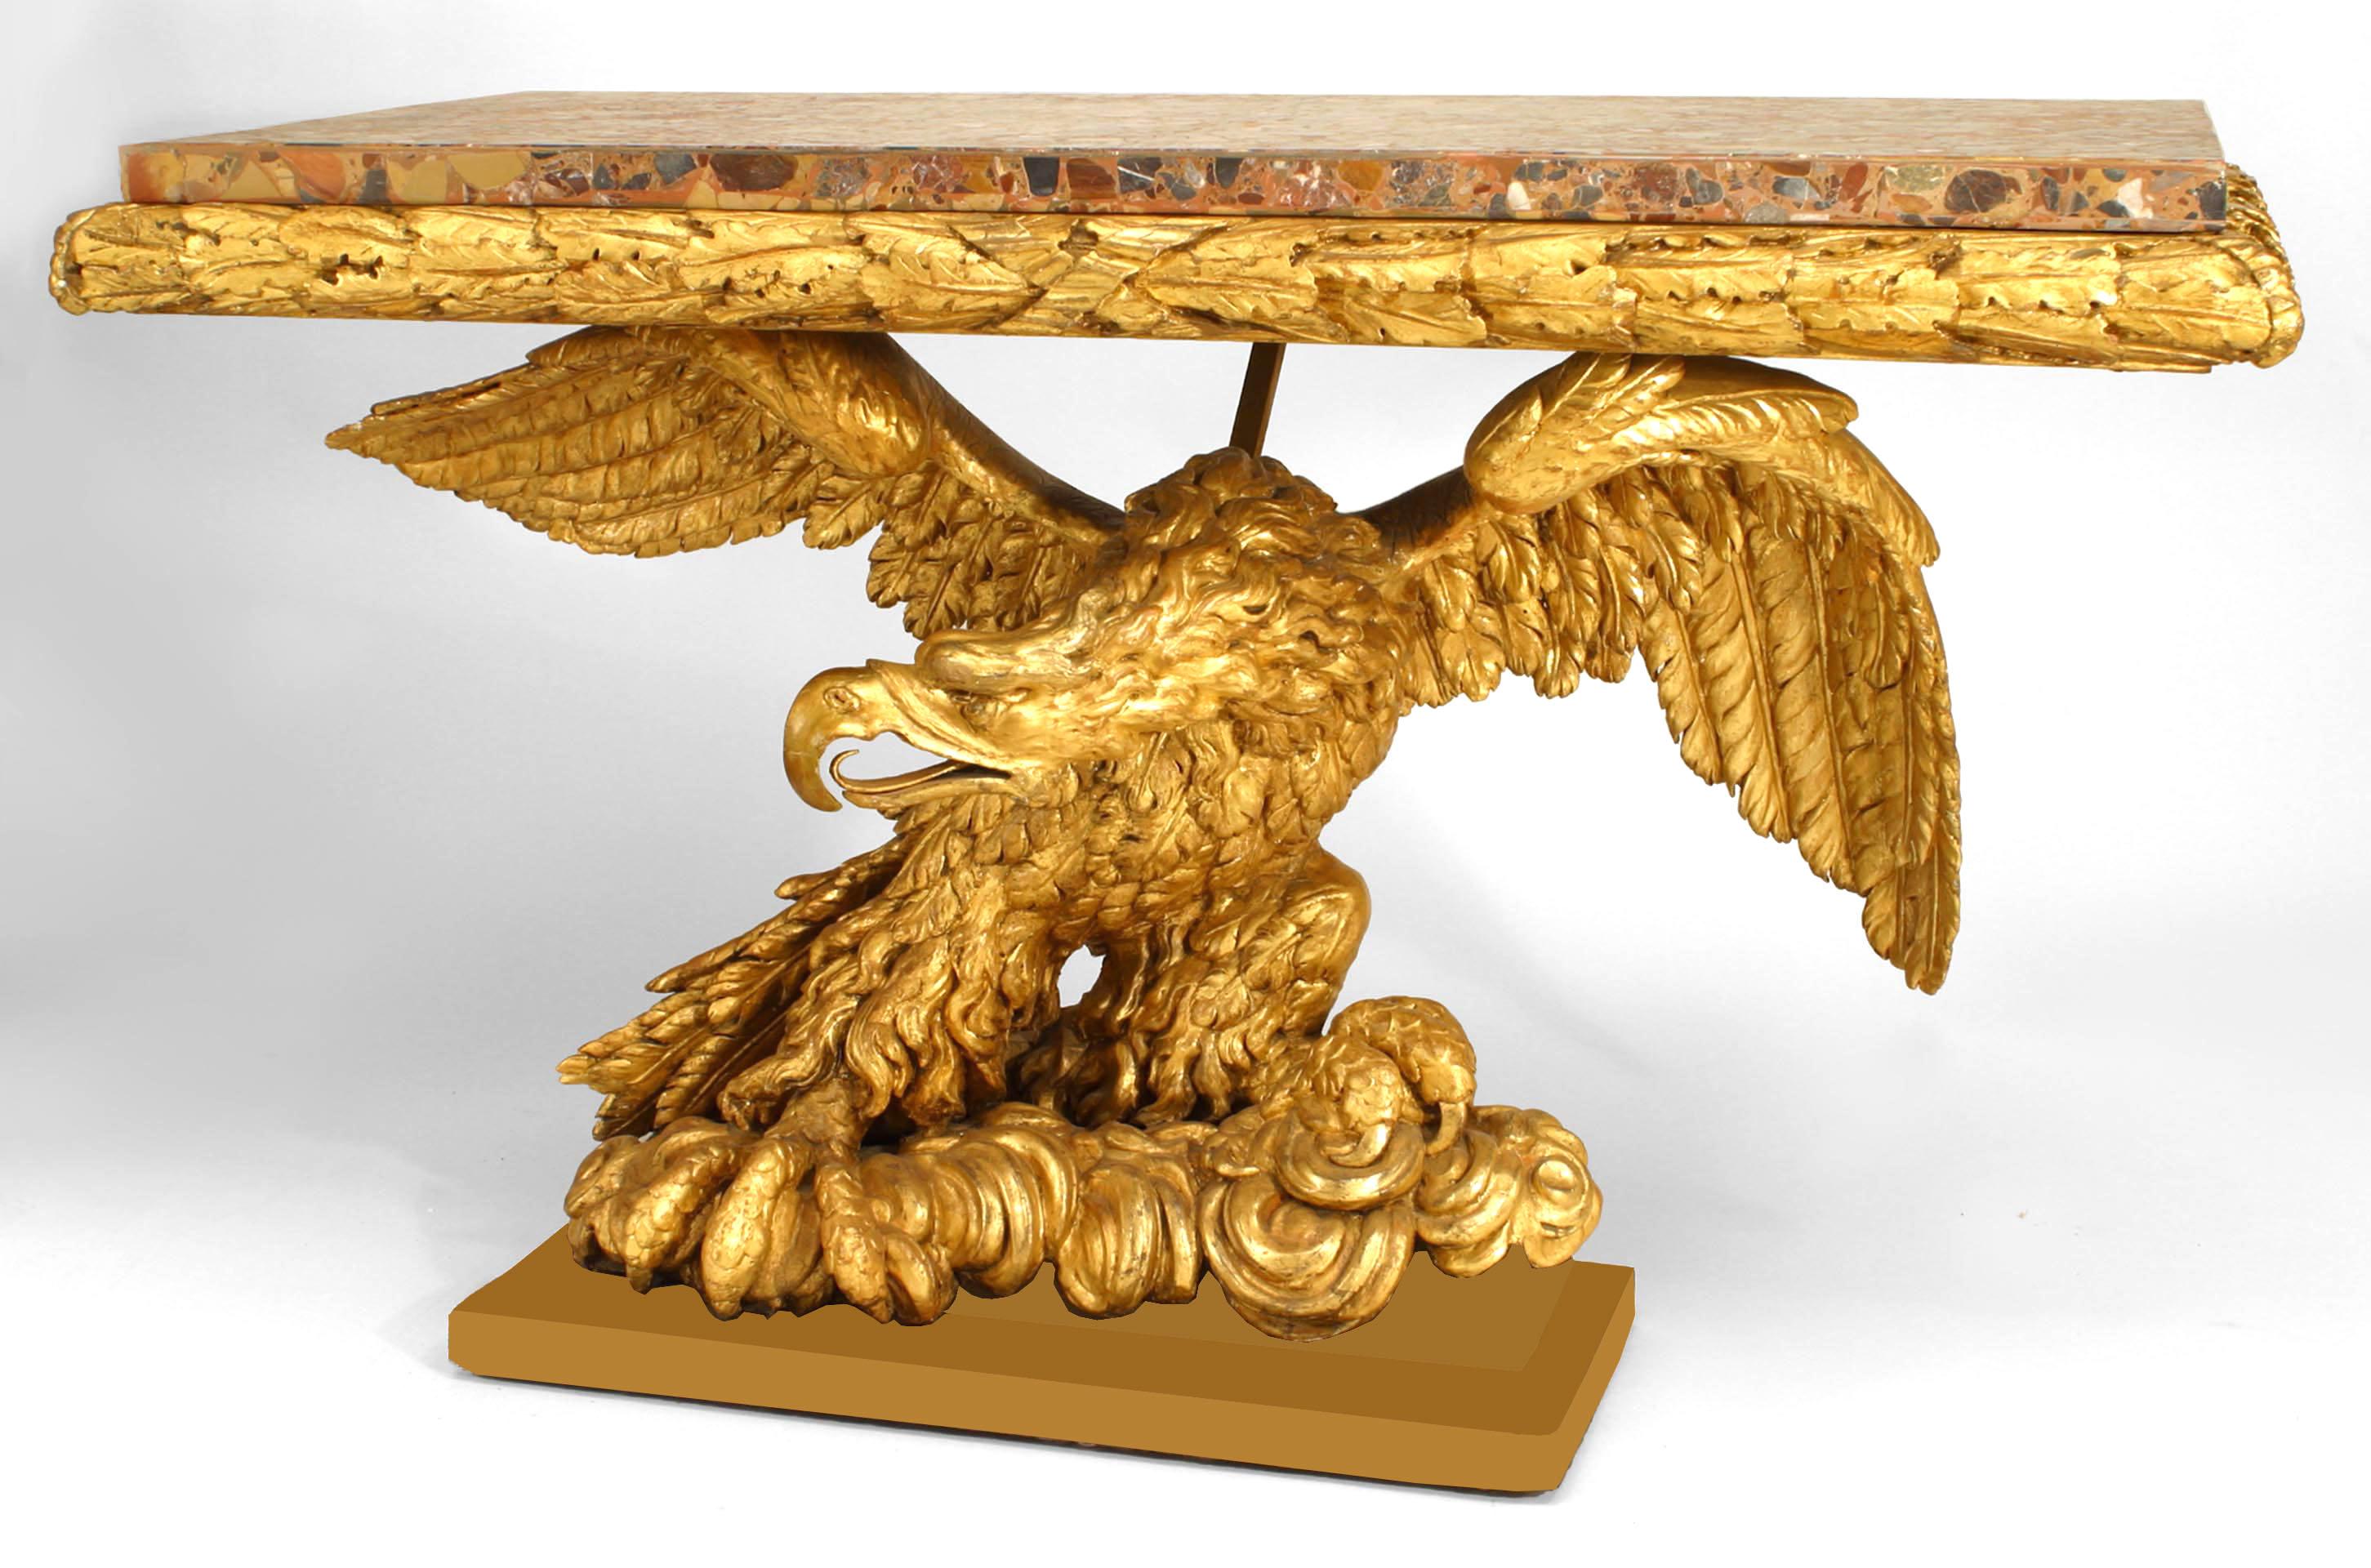 Console de style Empire italien, fin XVIIIe siècle / début XIXe siècle, à plateau en marbre bigarré et feuilles d'acanthe sculptées et dorées, reposant sur une base sculptée et dorée représentant un aigle aux ailes déployées assis sur une